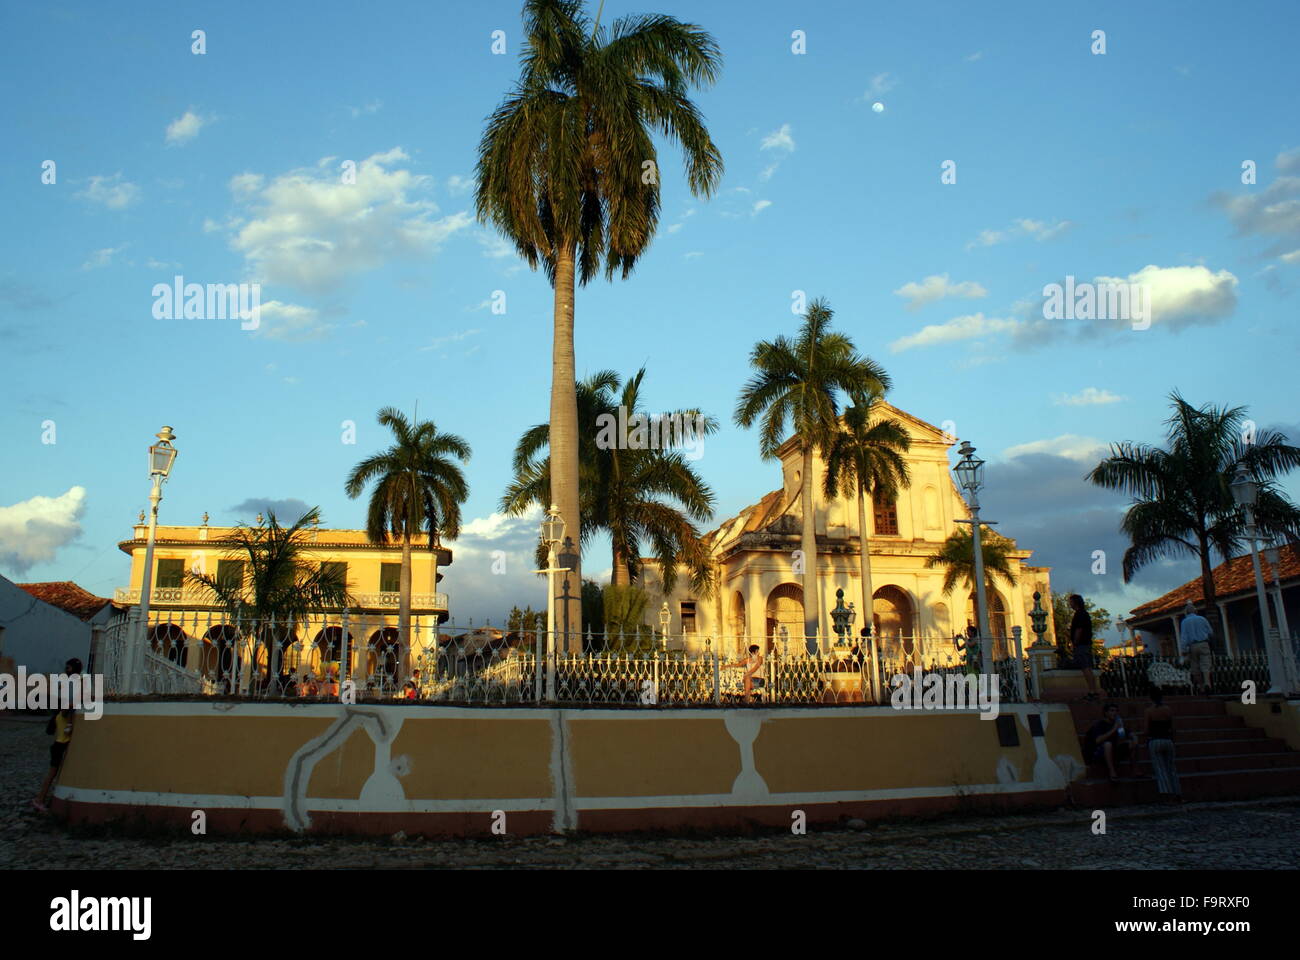 Brunet Palace and Church of the Holy Trinity, Plaza Mayor, Trinidad, Cuba Stock Photo